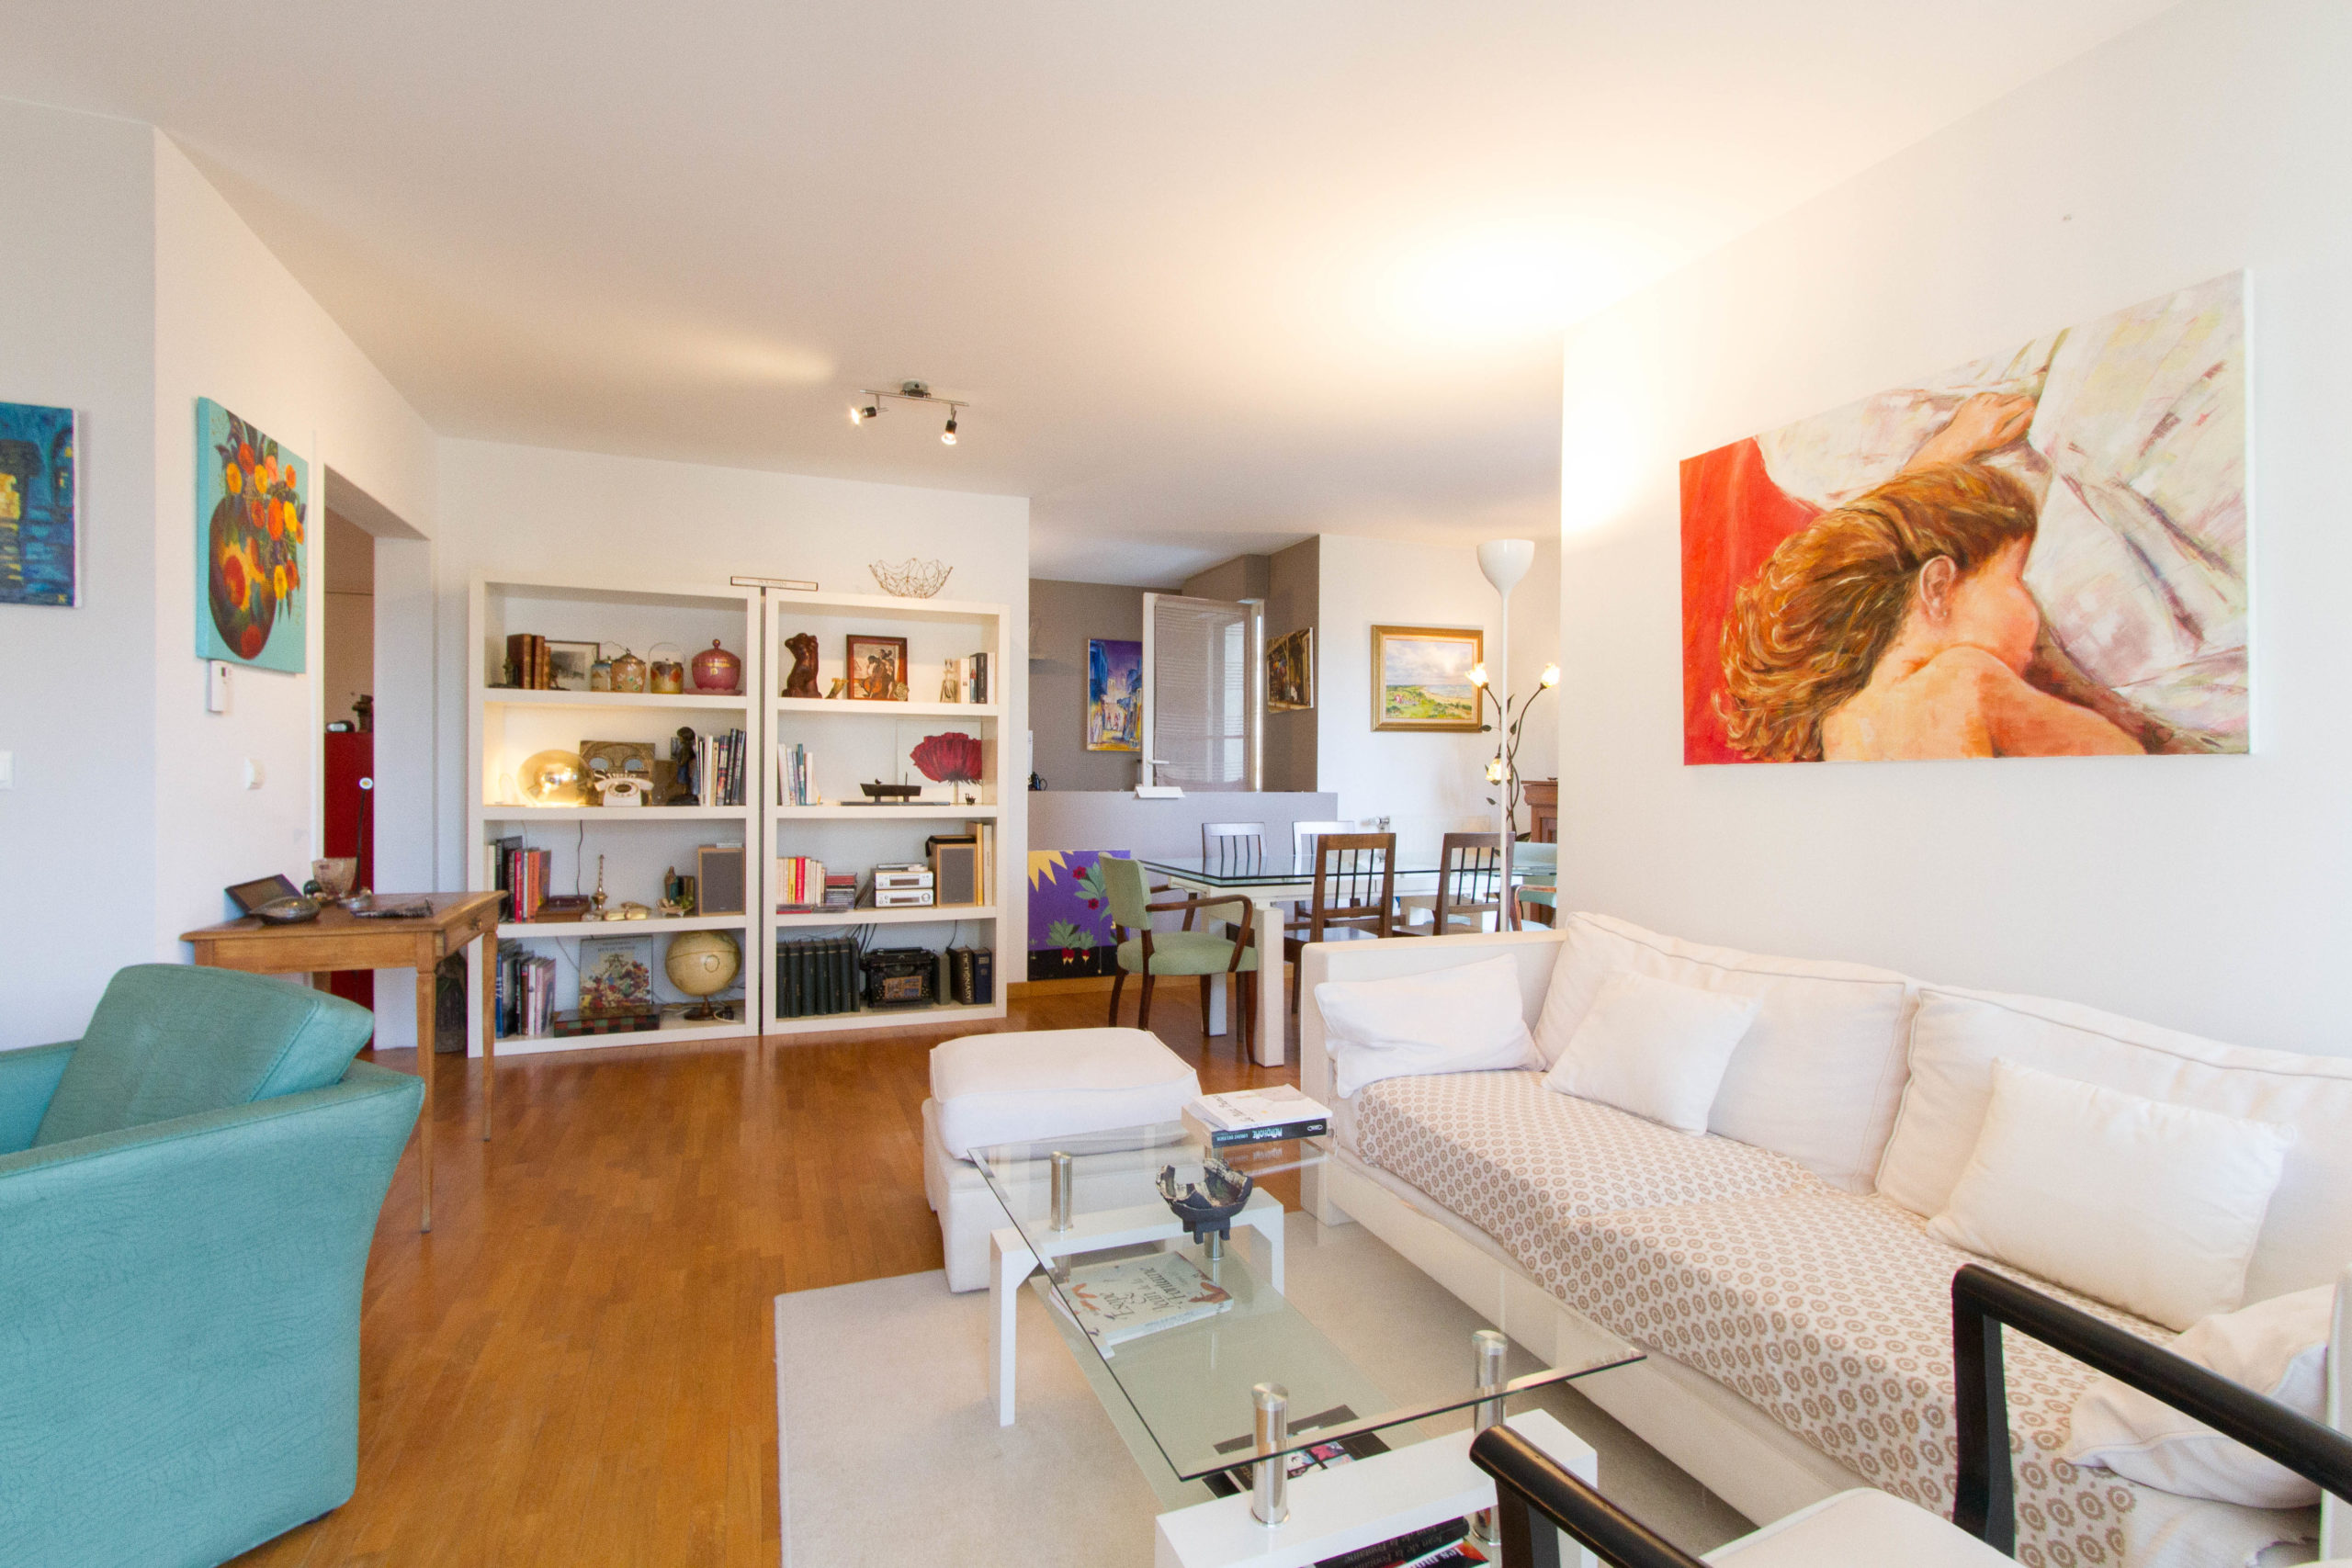 vente achat appartement duplex terrasse immeuble récent 75015 Paris 15ème